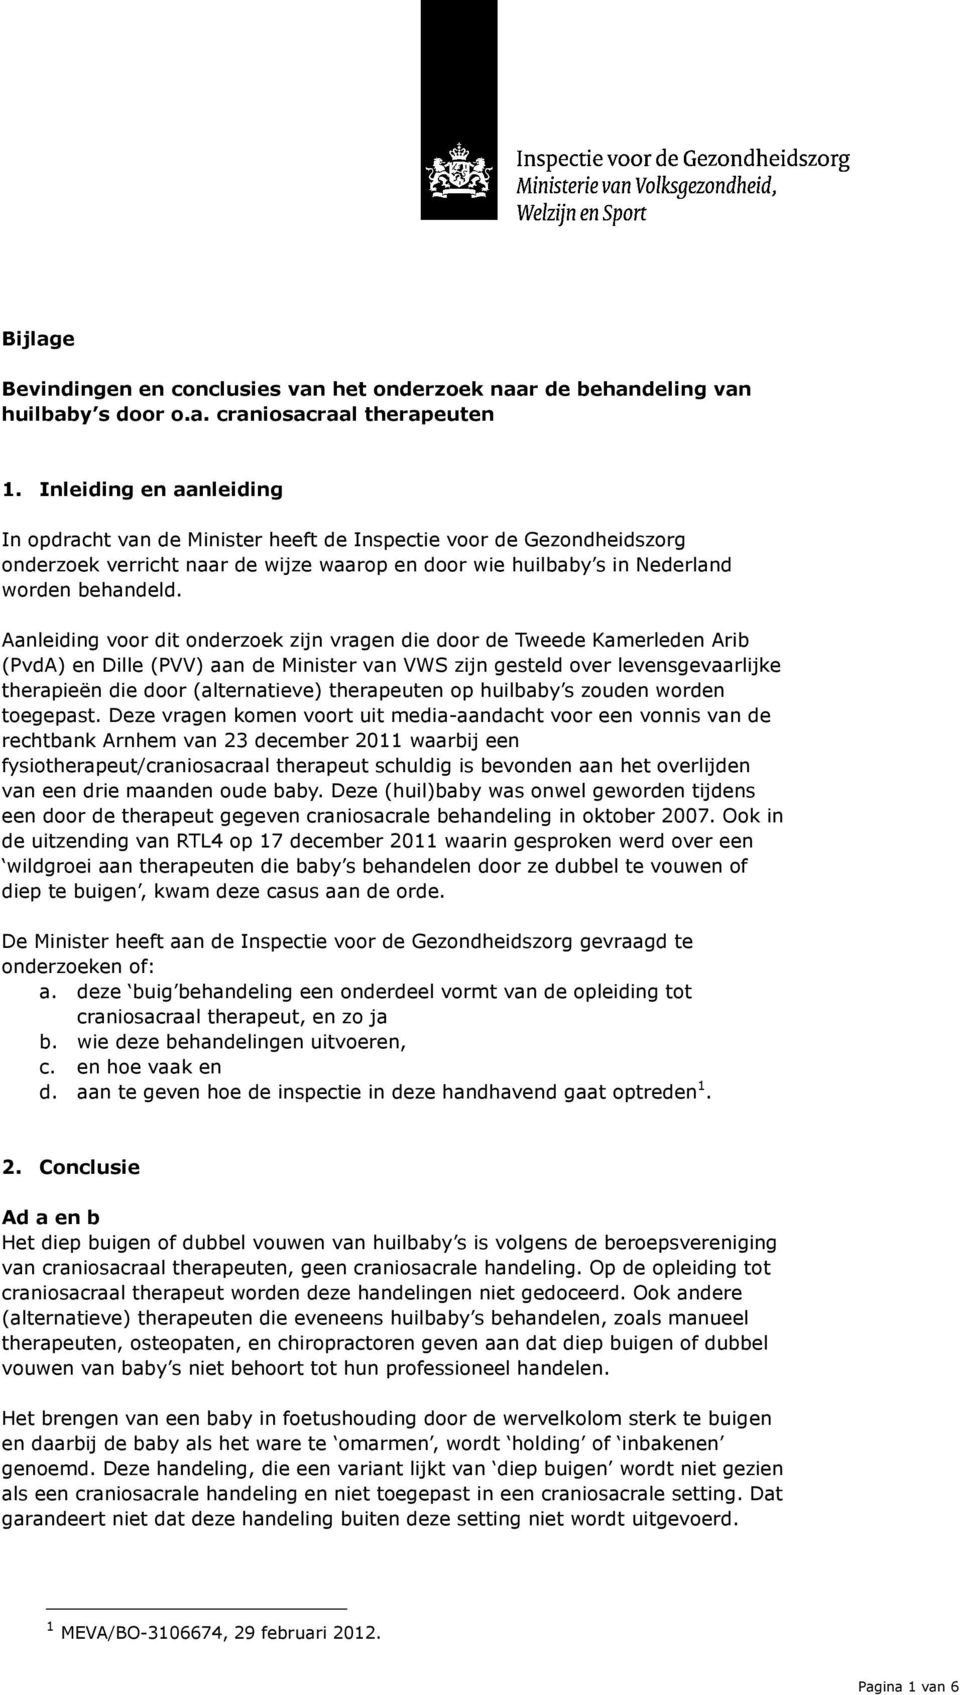 Aanleiding voor dit onderzoek zijn vragen die door de Tweede Kamerleden Arib (PvdA) en Dille (PVV) aan de Minister van VWS zijn gesteld over levensgevaarlijke therapieën die door (alternatieve)